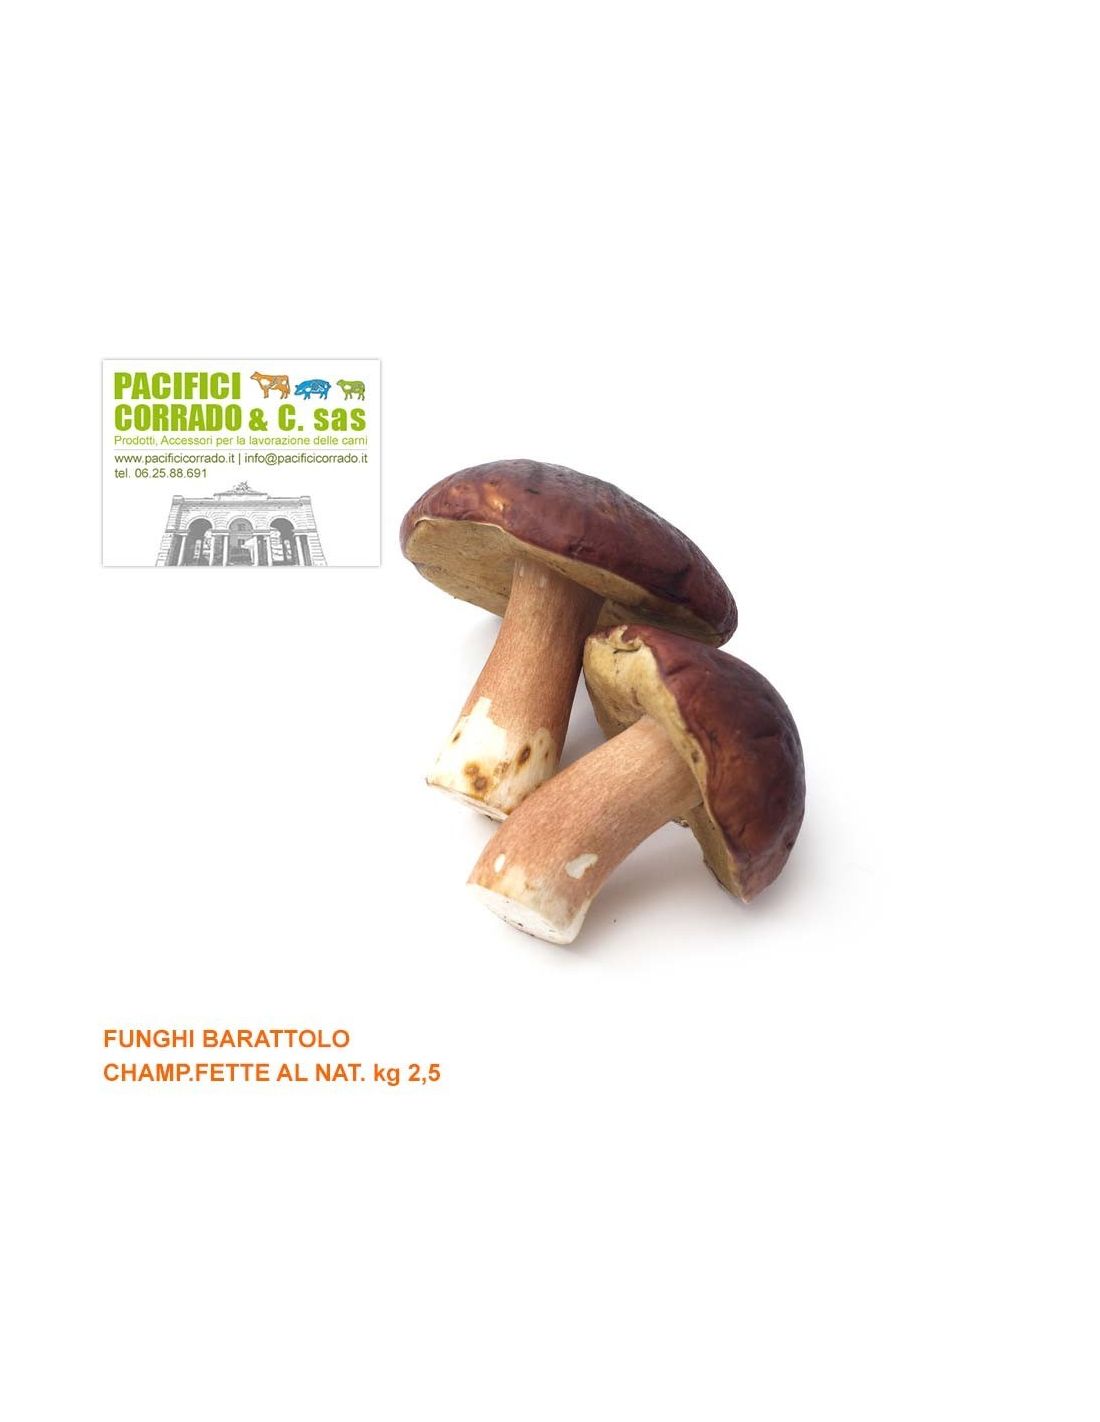 Funghi champignon fette al naturale kg 2,5